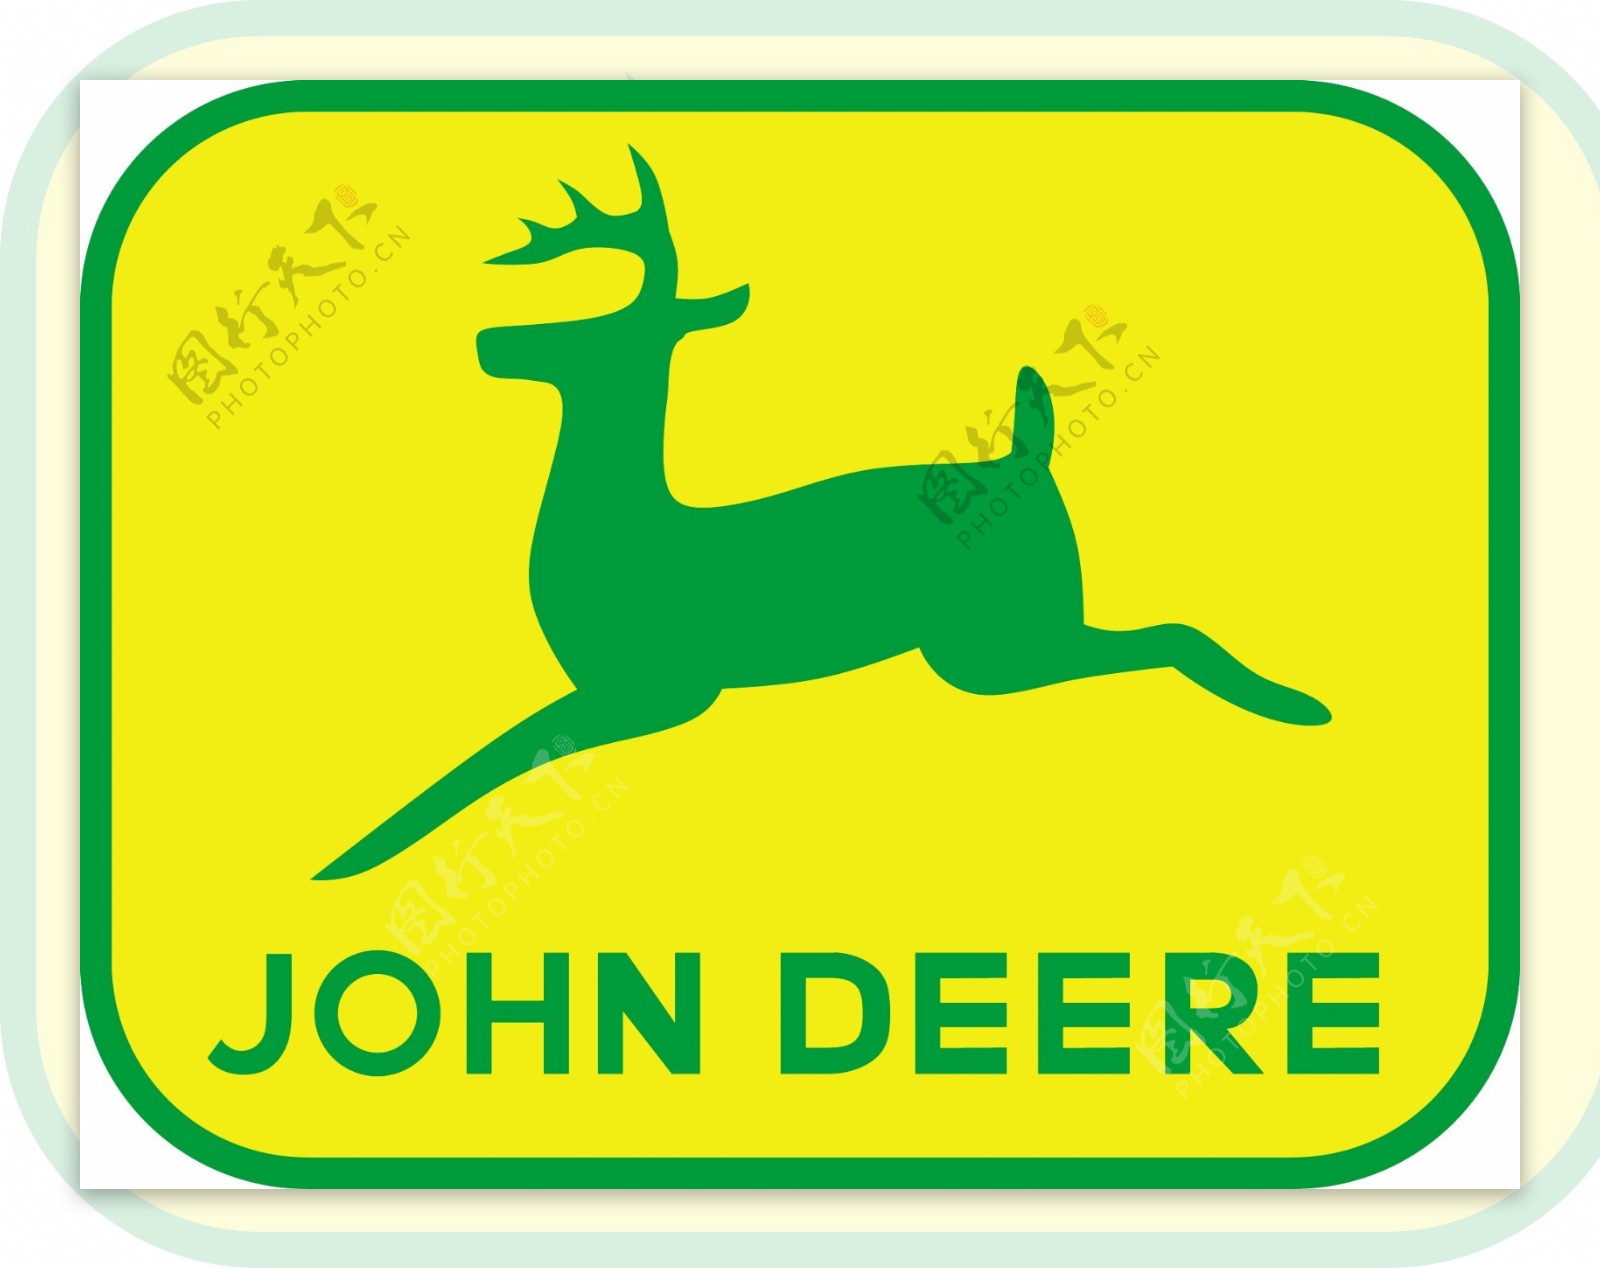 约翰迪尔logo2